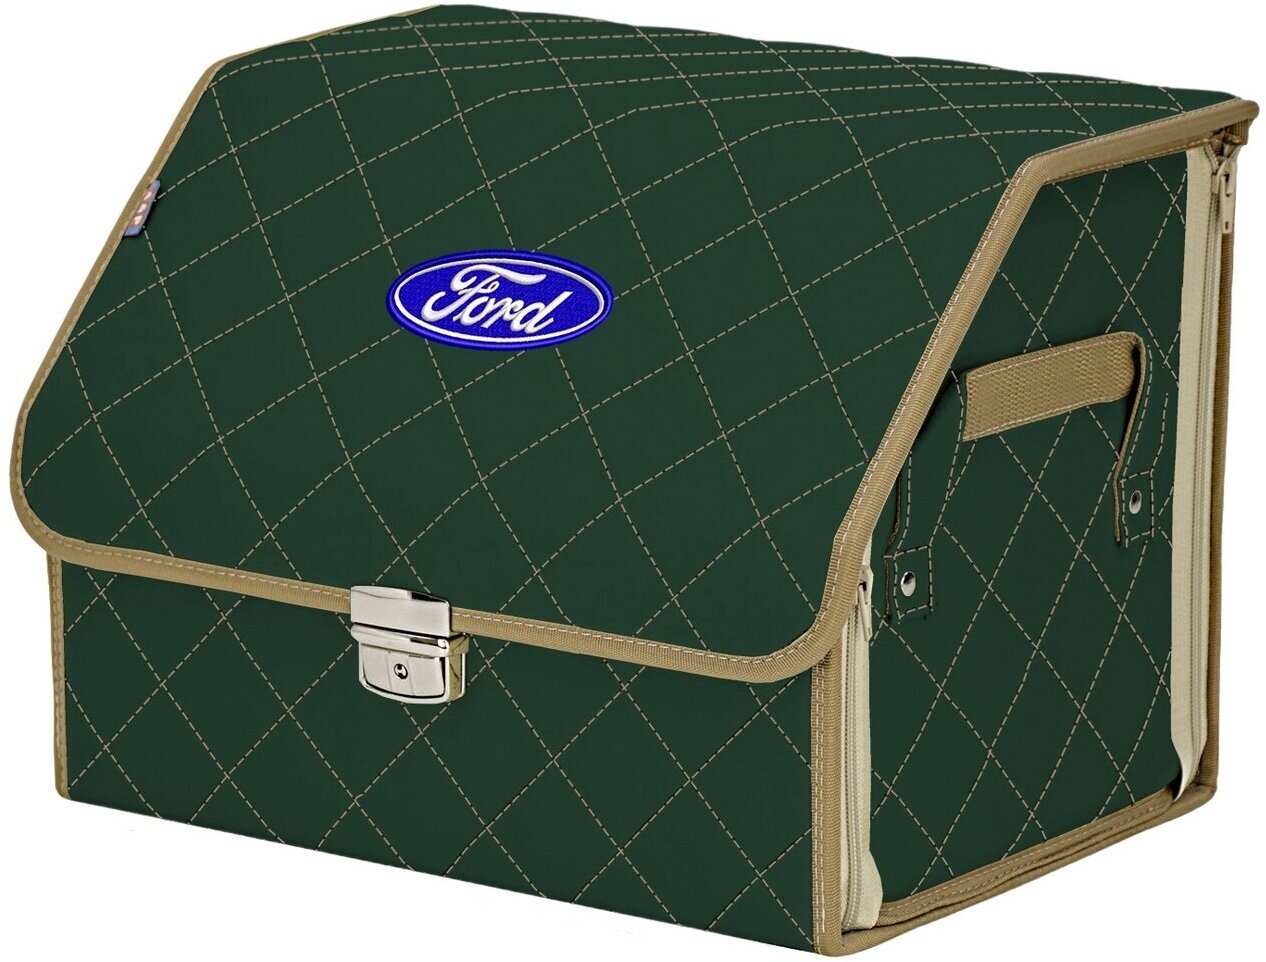 Органайзер-саквояж в багажник "Союз Премиум" (размер M). Цвет: зеленый с бежевой прострочкой Ромб и вышивкой Ford (Форд).